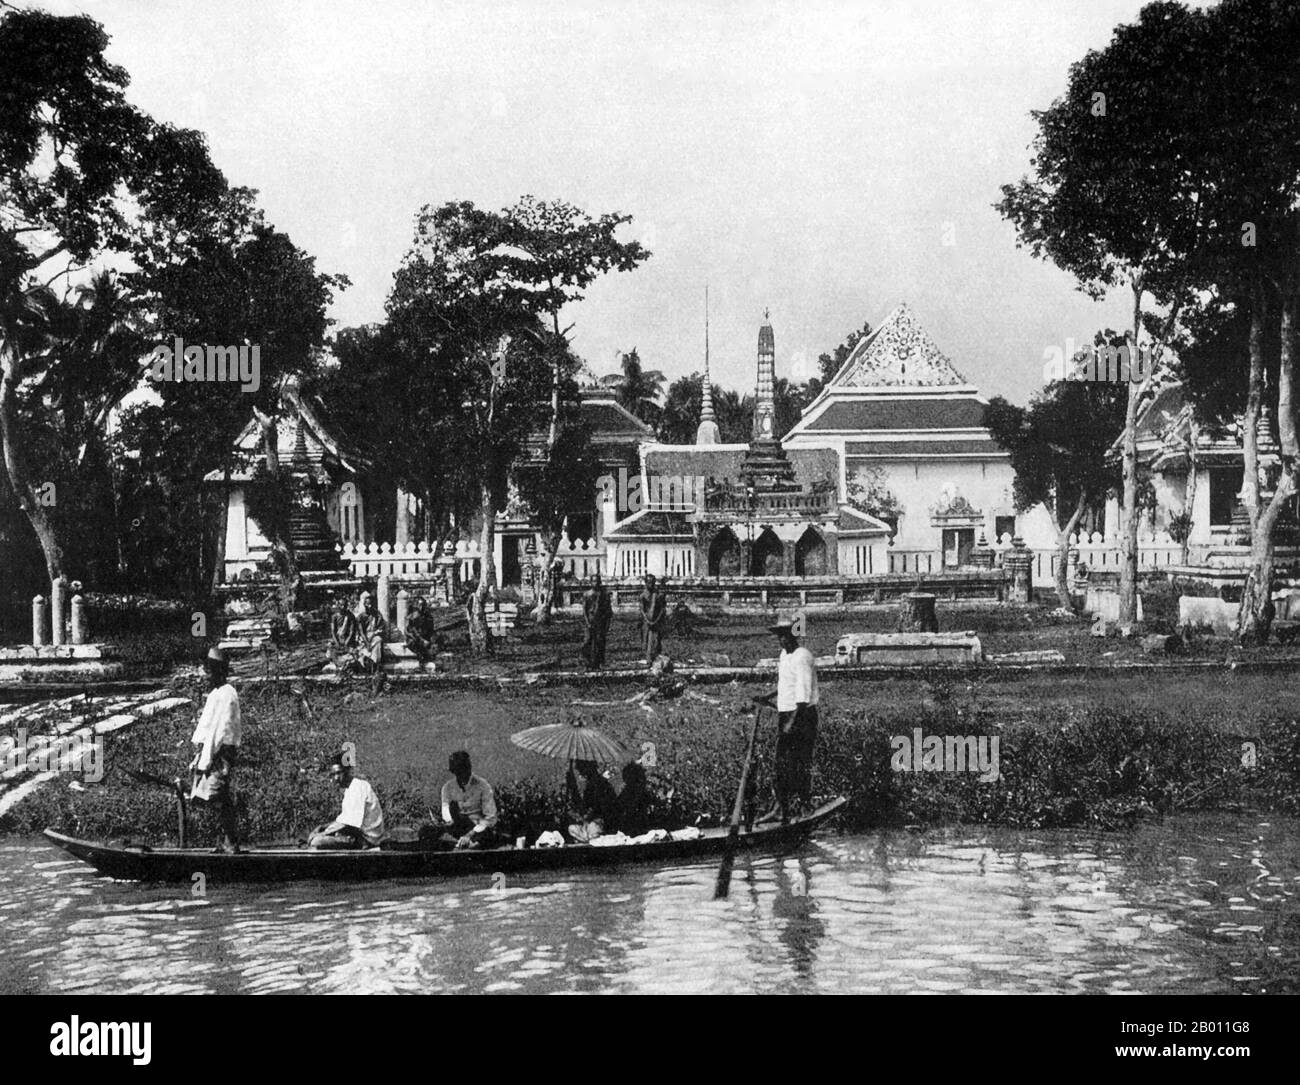 Thaïlande: Un petit bateau à passagers à l'extérieur d'un temple bouddhiste près de Bangkok, c. 1900. Au tournant du XXe siècle, la grande majorité des Siamois étaient des riziculteurs qui vivaient et travaillaient le long des cours d'eau. Chaque ménage avait un bateau, dont environ 600,000 navigué sur les canaux et les rivières de Bangkok. L'aviron a été fait de l'arrière du bateau. La plupart des maisons étaient en bois et en bambou, et ont été construites sur pilotis avec une échelle allant à l'eau. Banque D'Images